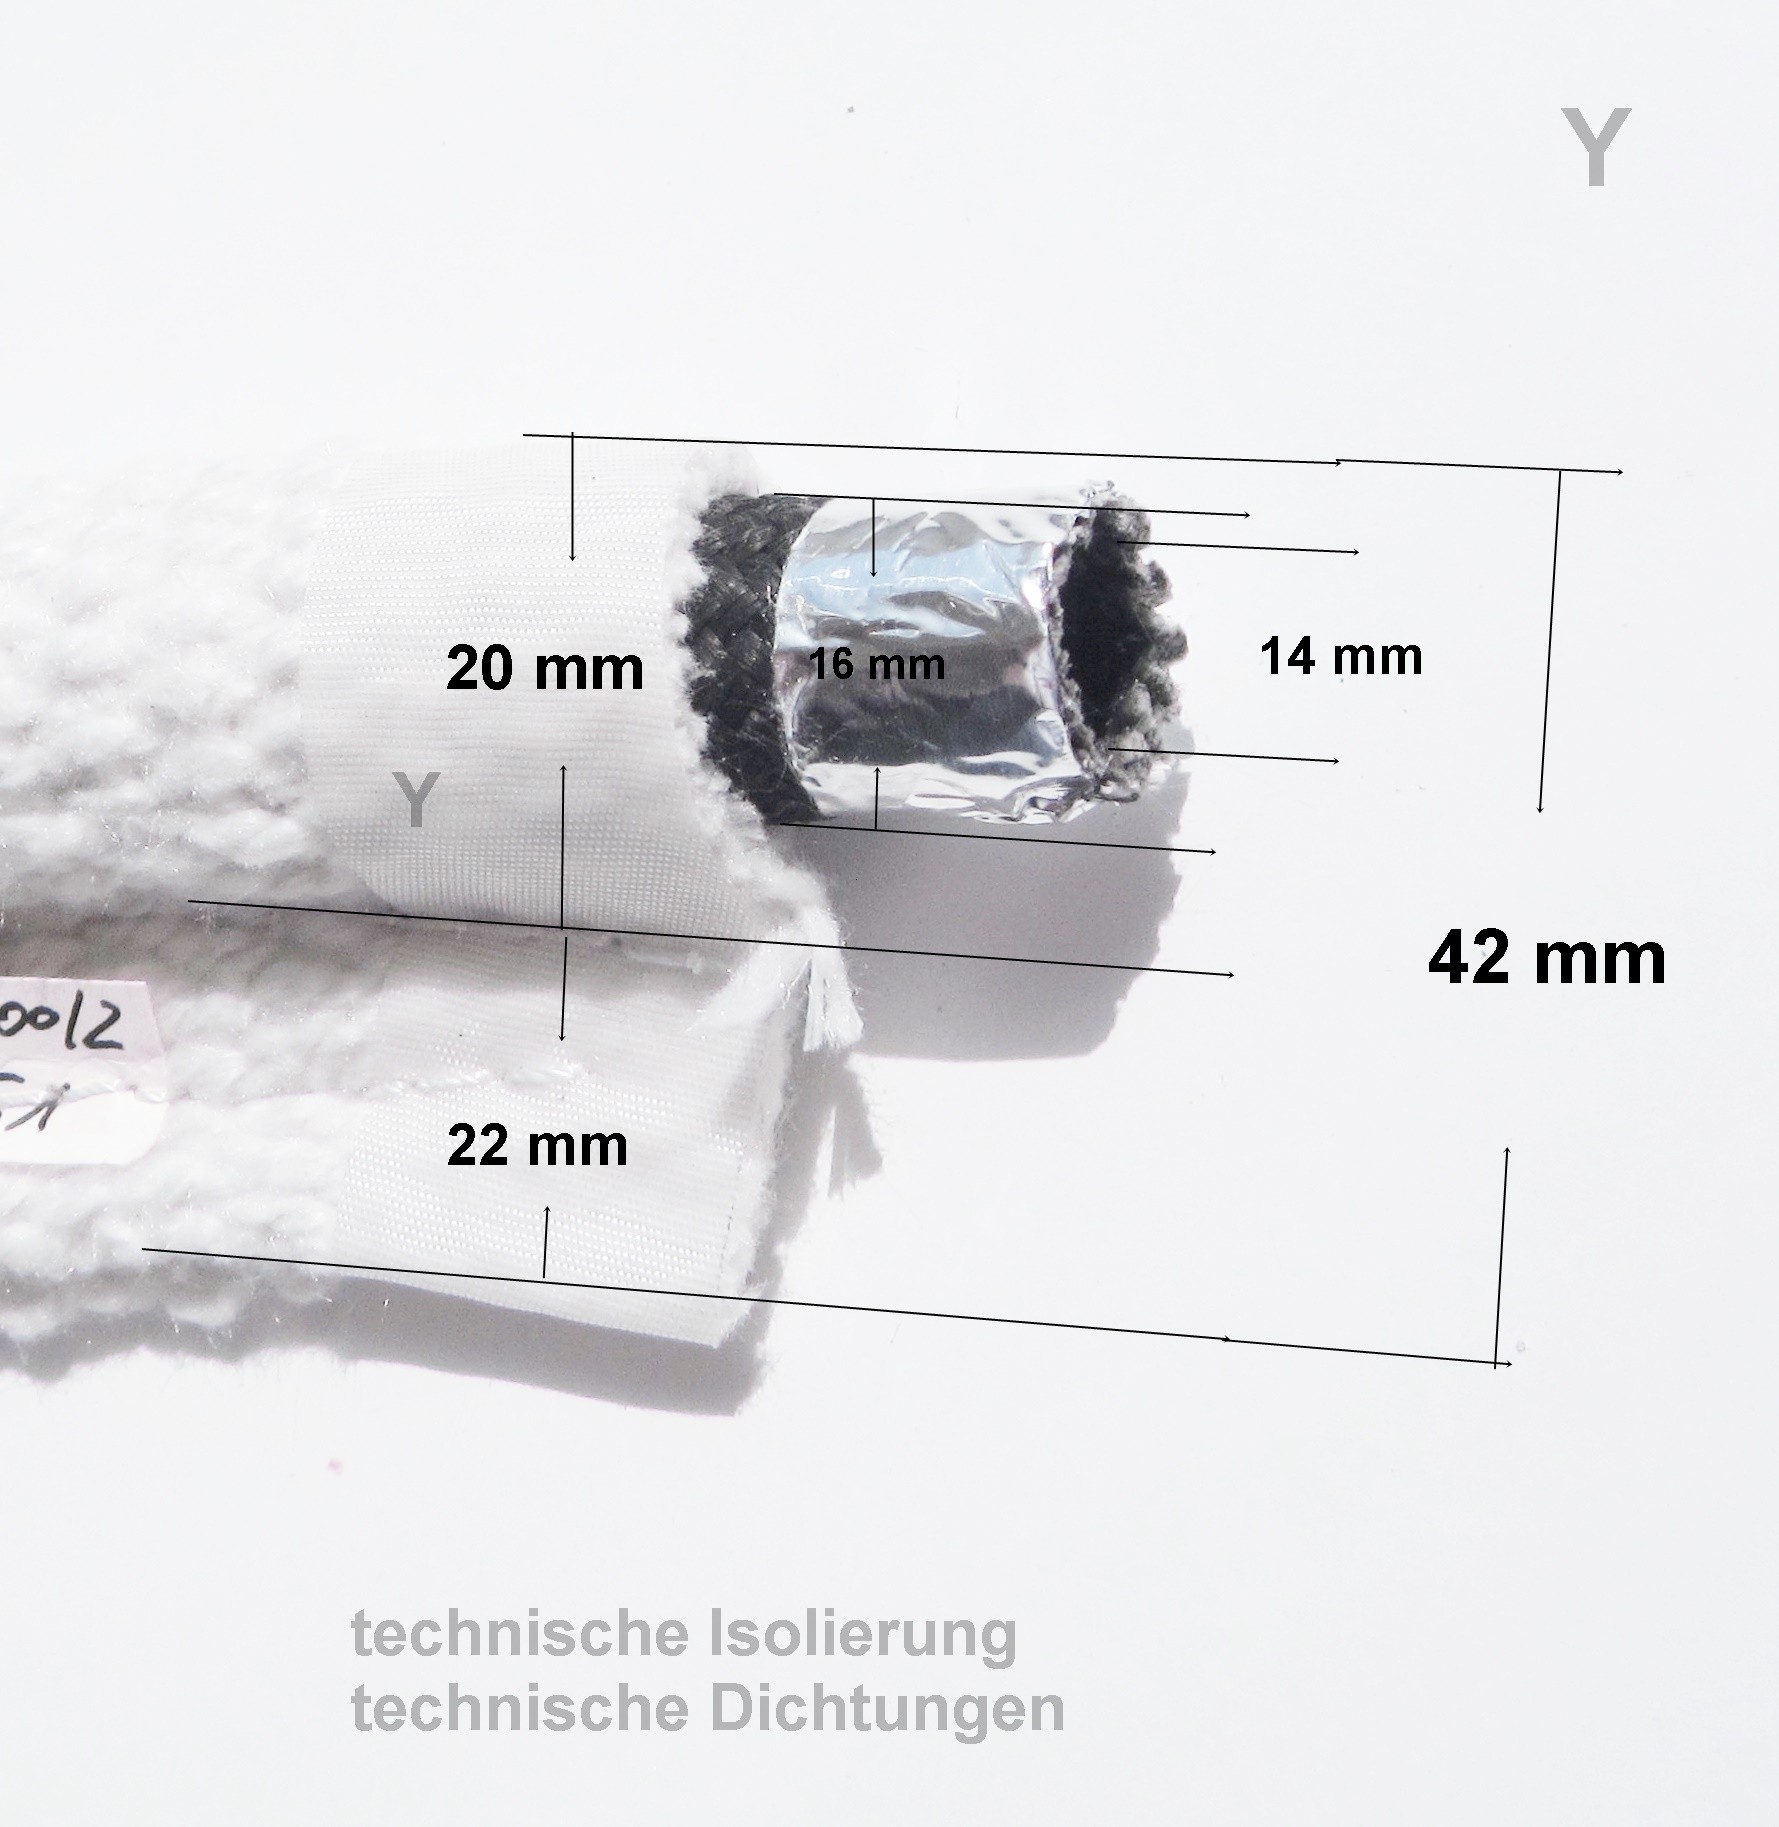 Fahnendichtung mit 16mm Hohlschlauch Trockenofenbau Tunnelofen IOS Wartung Klemmdichtung Kederband